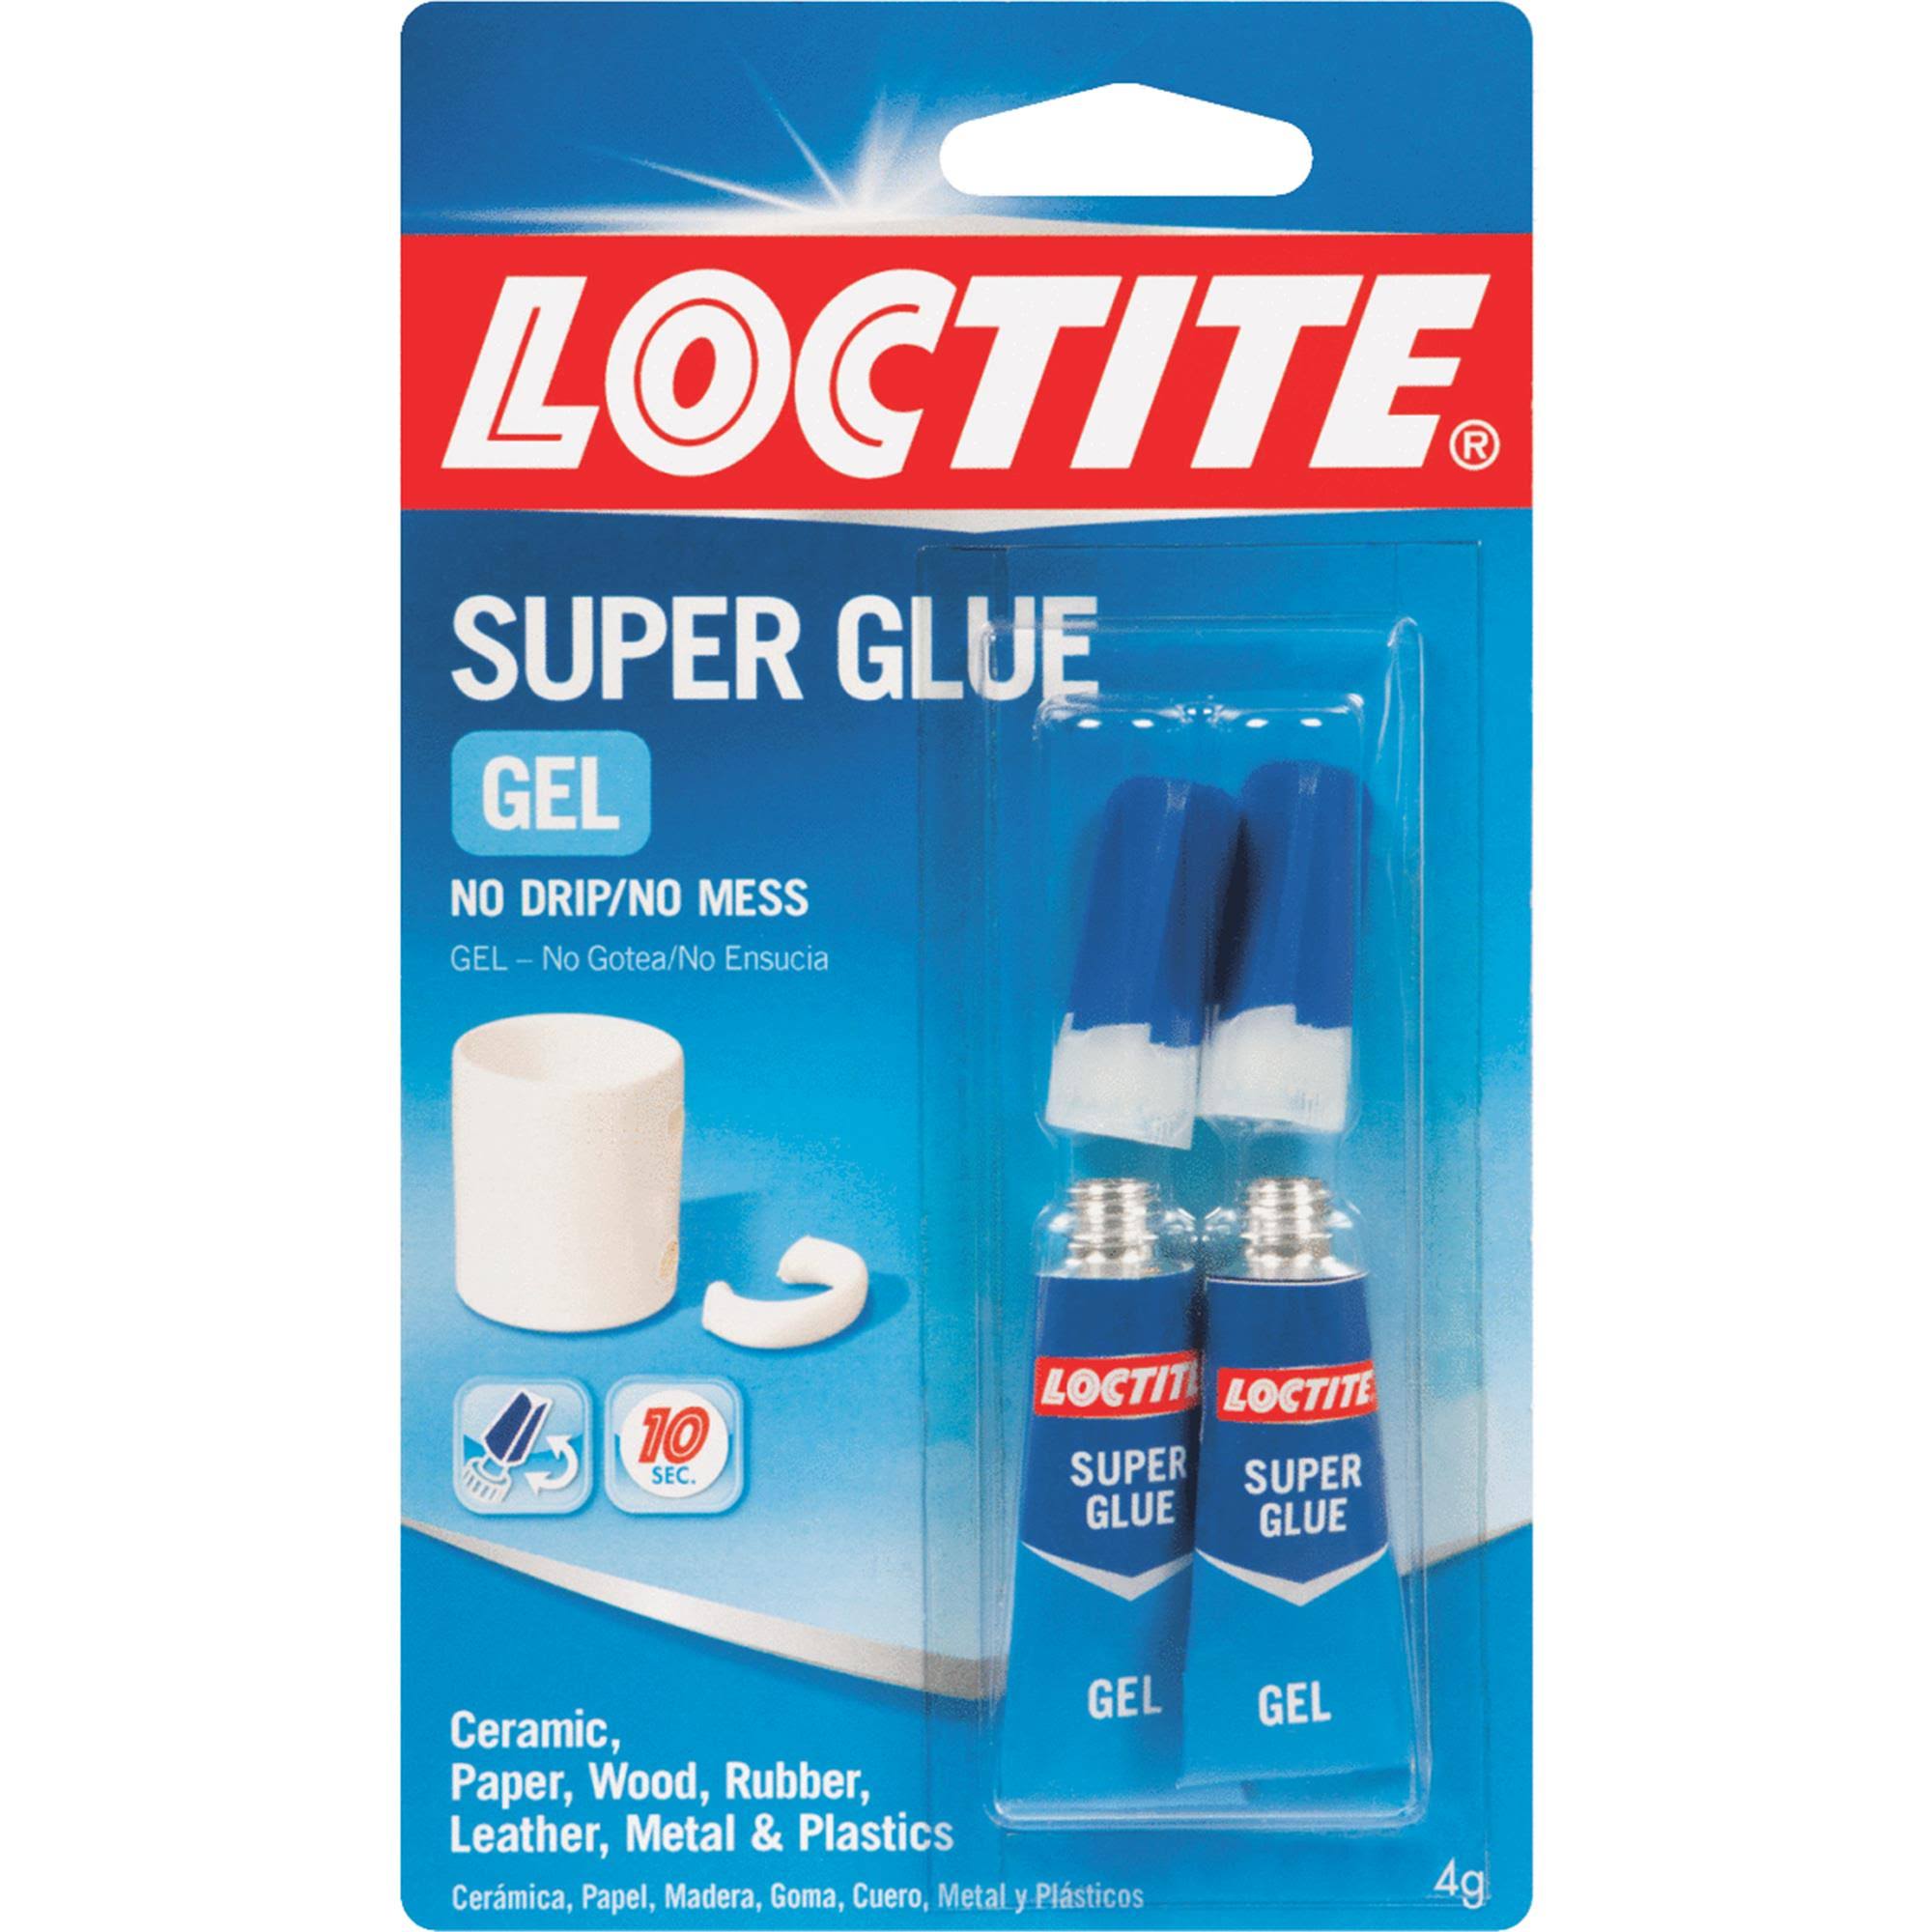 Loctite Super Glue Gel - 2 x 2g